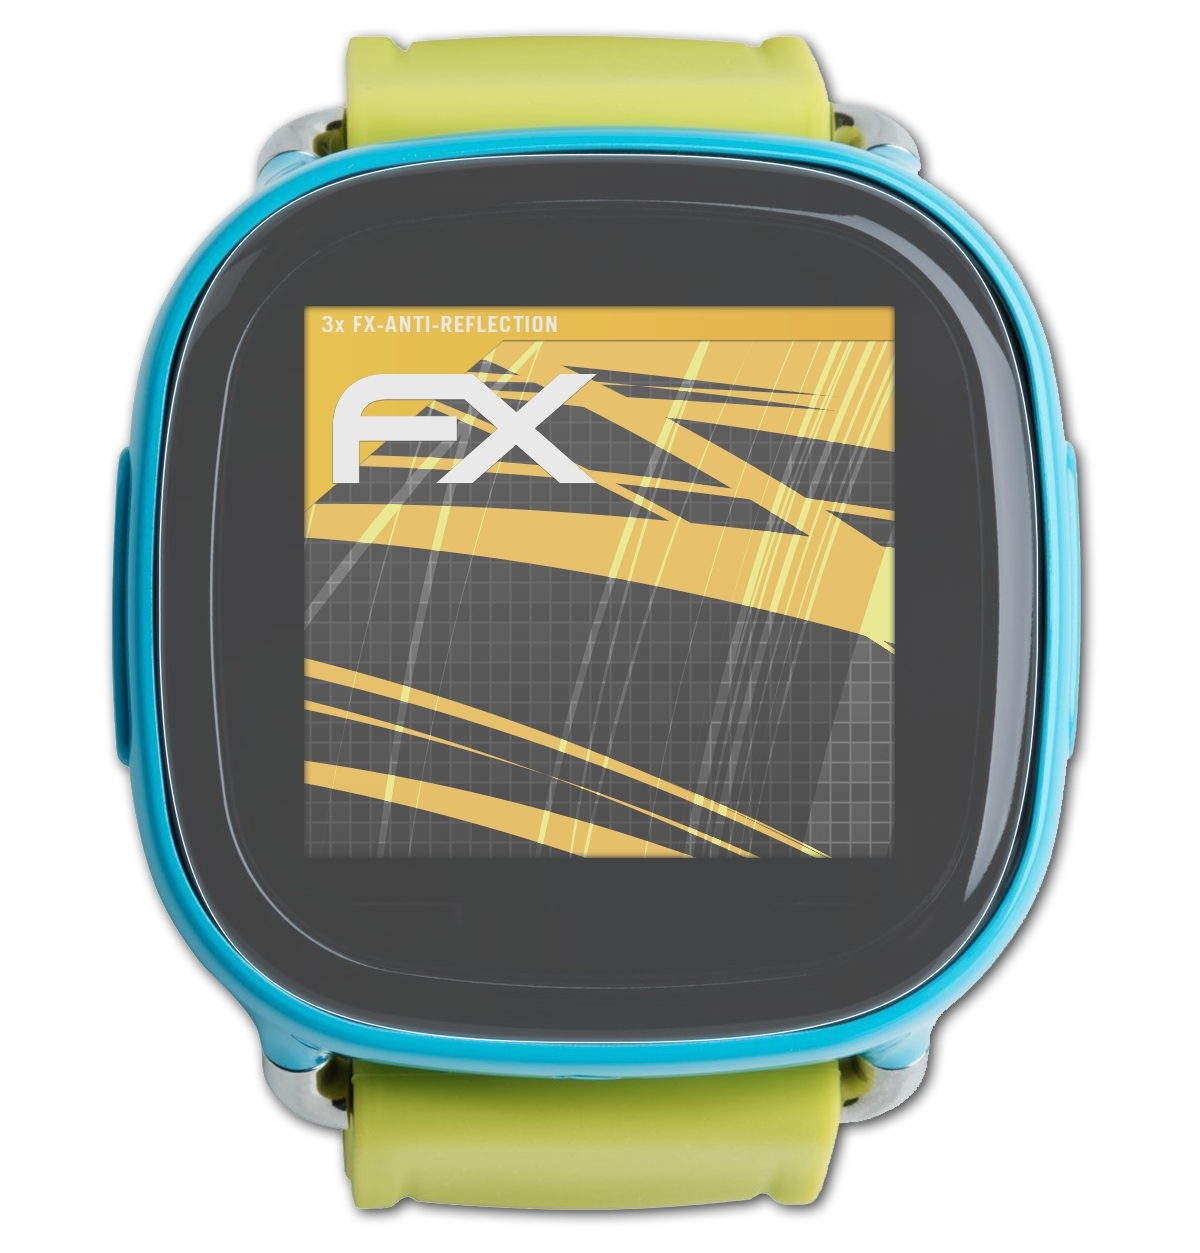 3x FX-Antireflex ATFOLIX Displayschutz(für Kids) XPlora